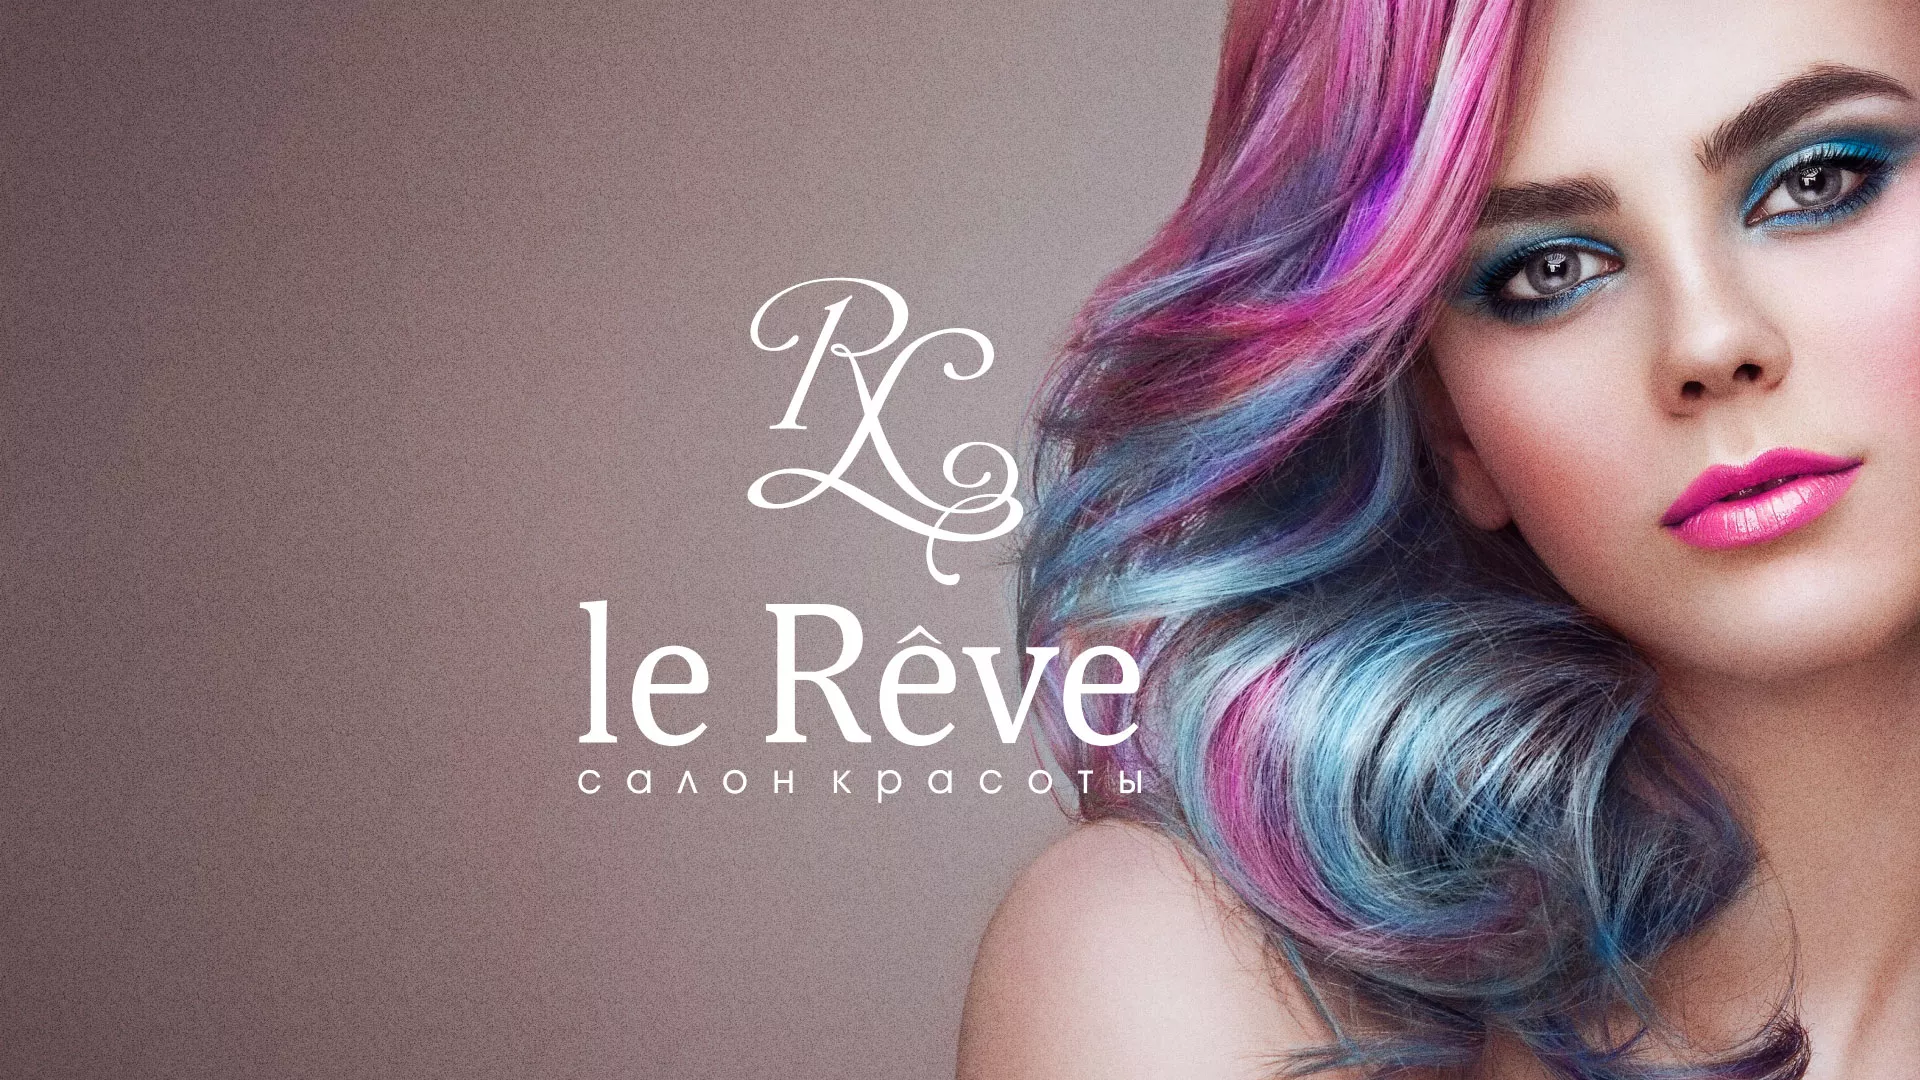 Создание сайта для салона красоты «Le Reve» в Октябрьске